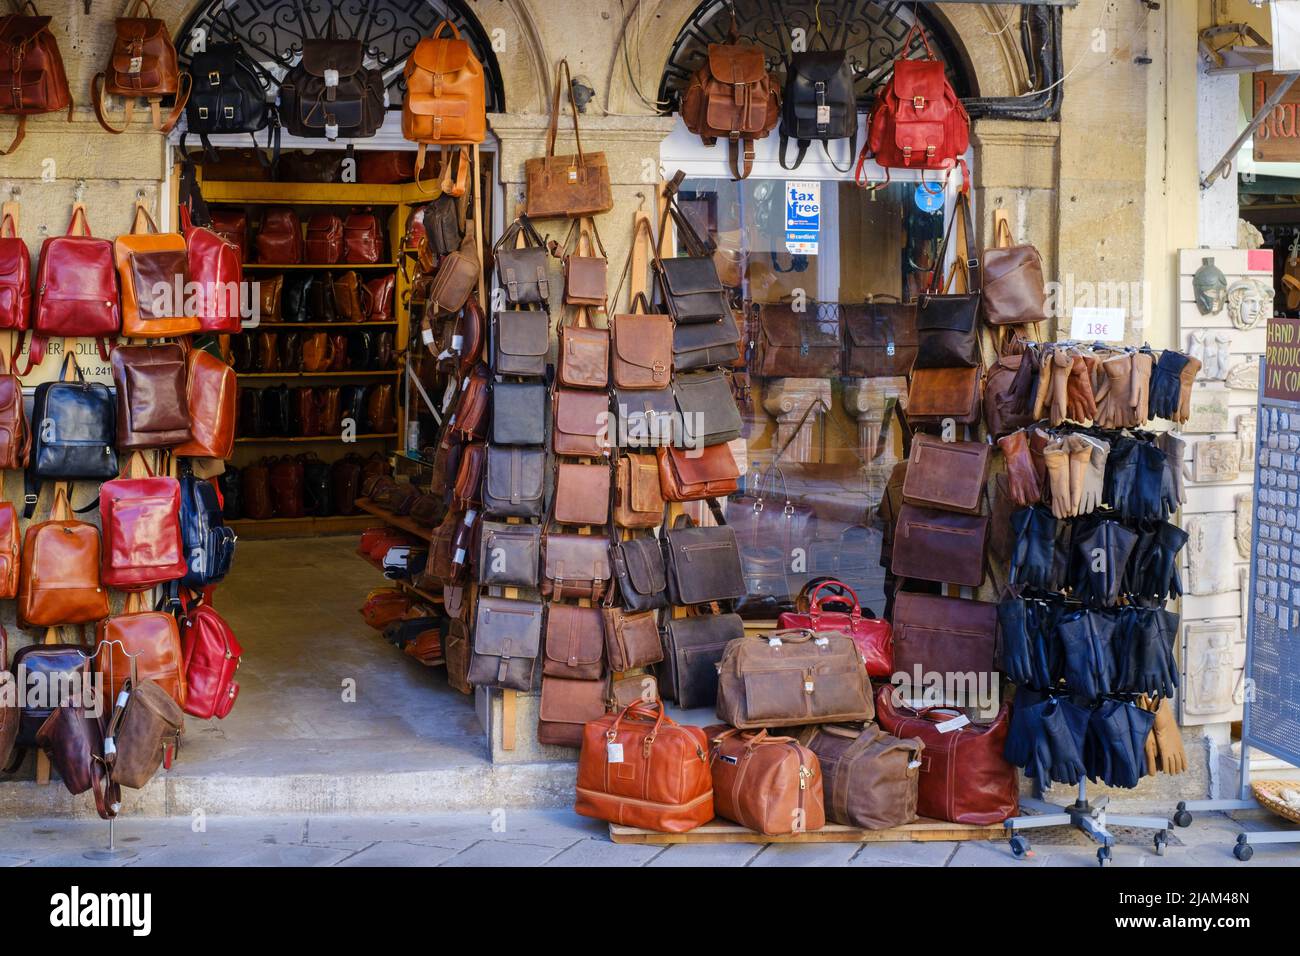 Leather goods stall in market, Corfu Town, Corfu or Kerkyra, Greece Stock Photo